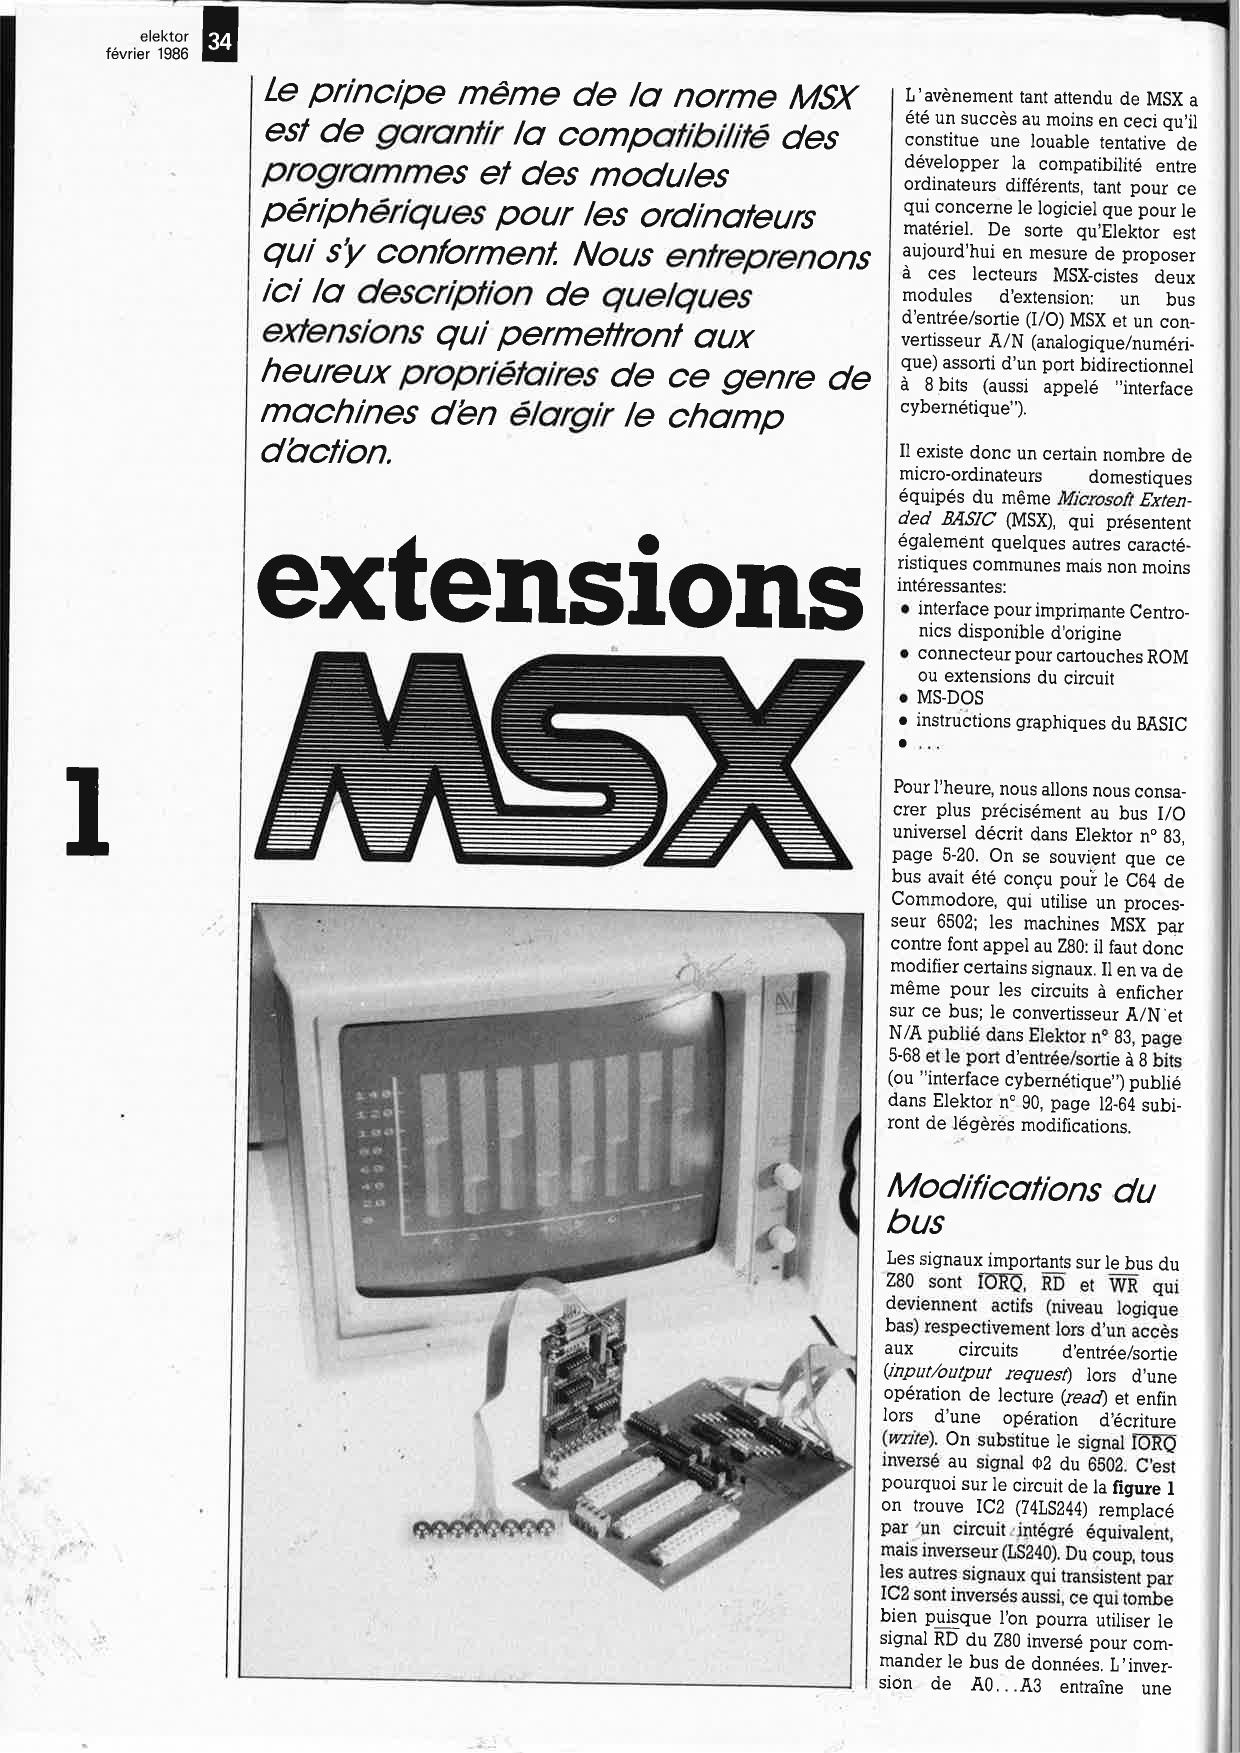 Extensions MSX: bus d` E/S